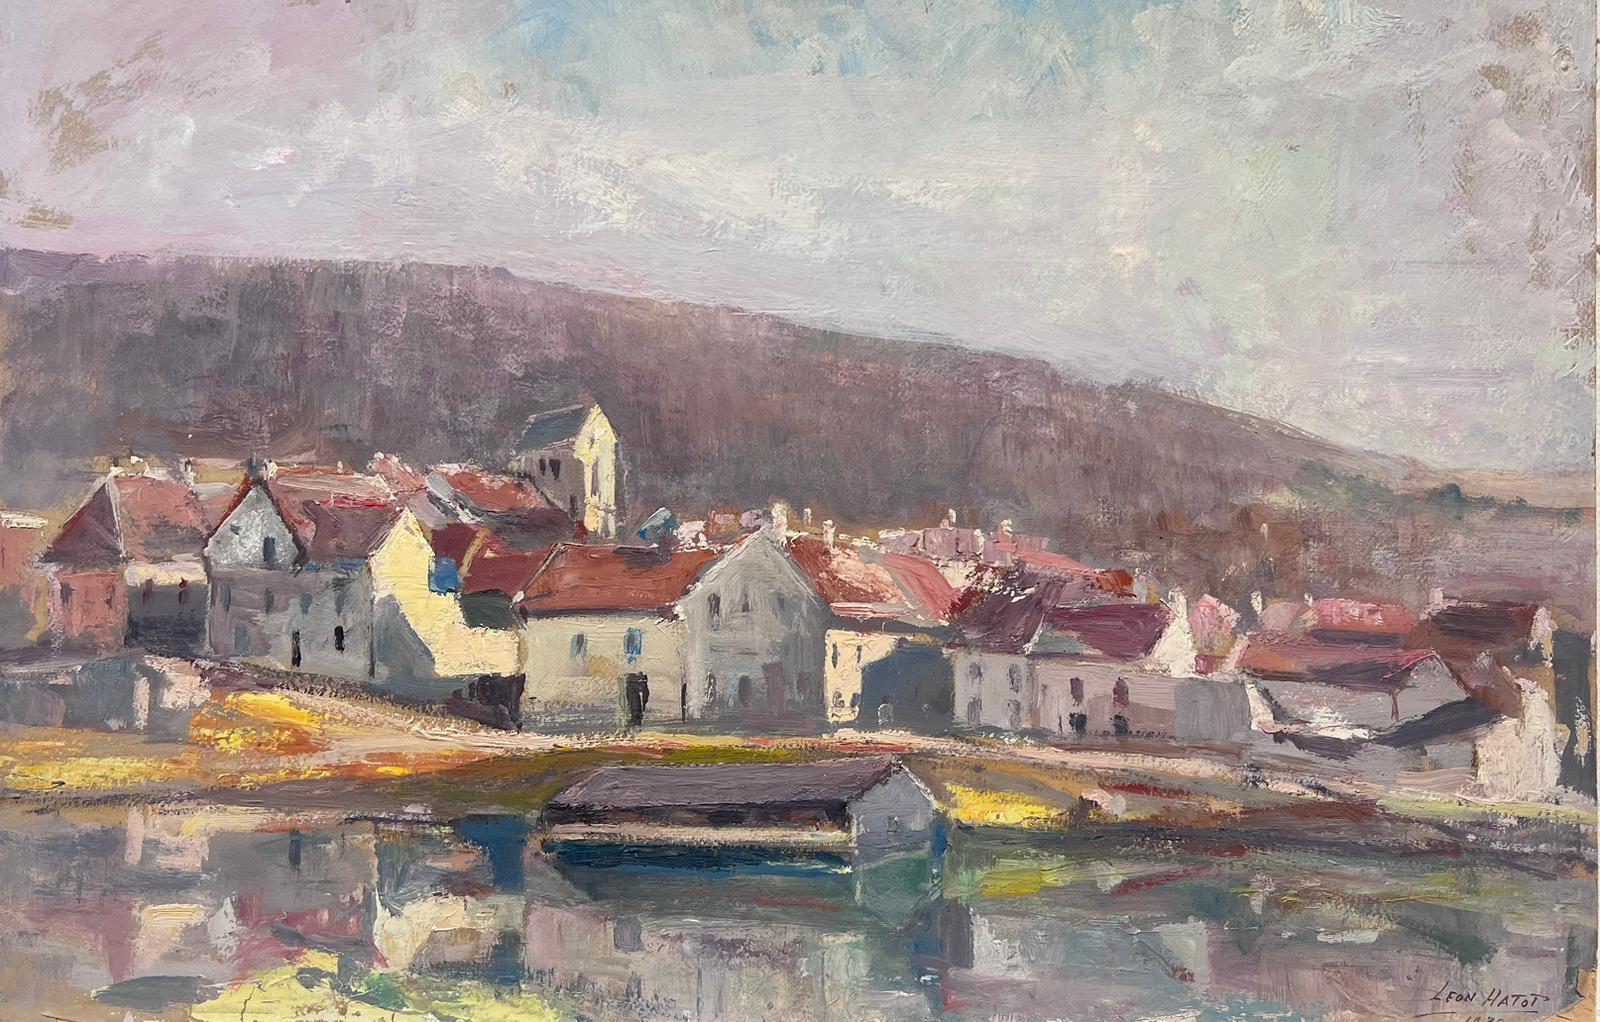 Landscape Painting Leon Hatot - Peinture à l'huile française ancienne d'une ville grise, Reflection le long du lac